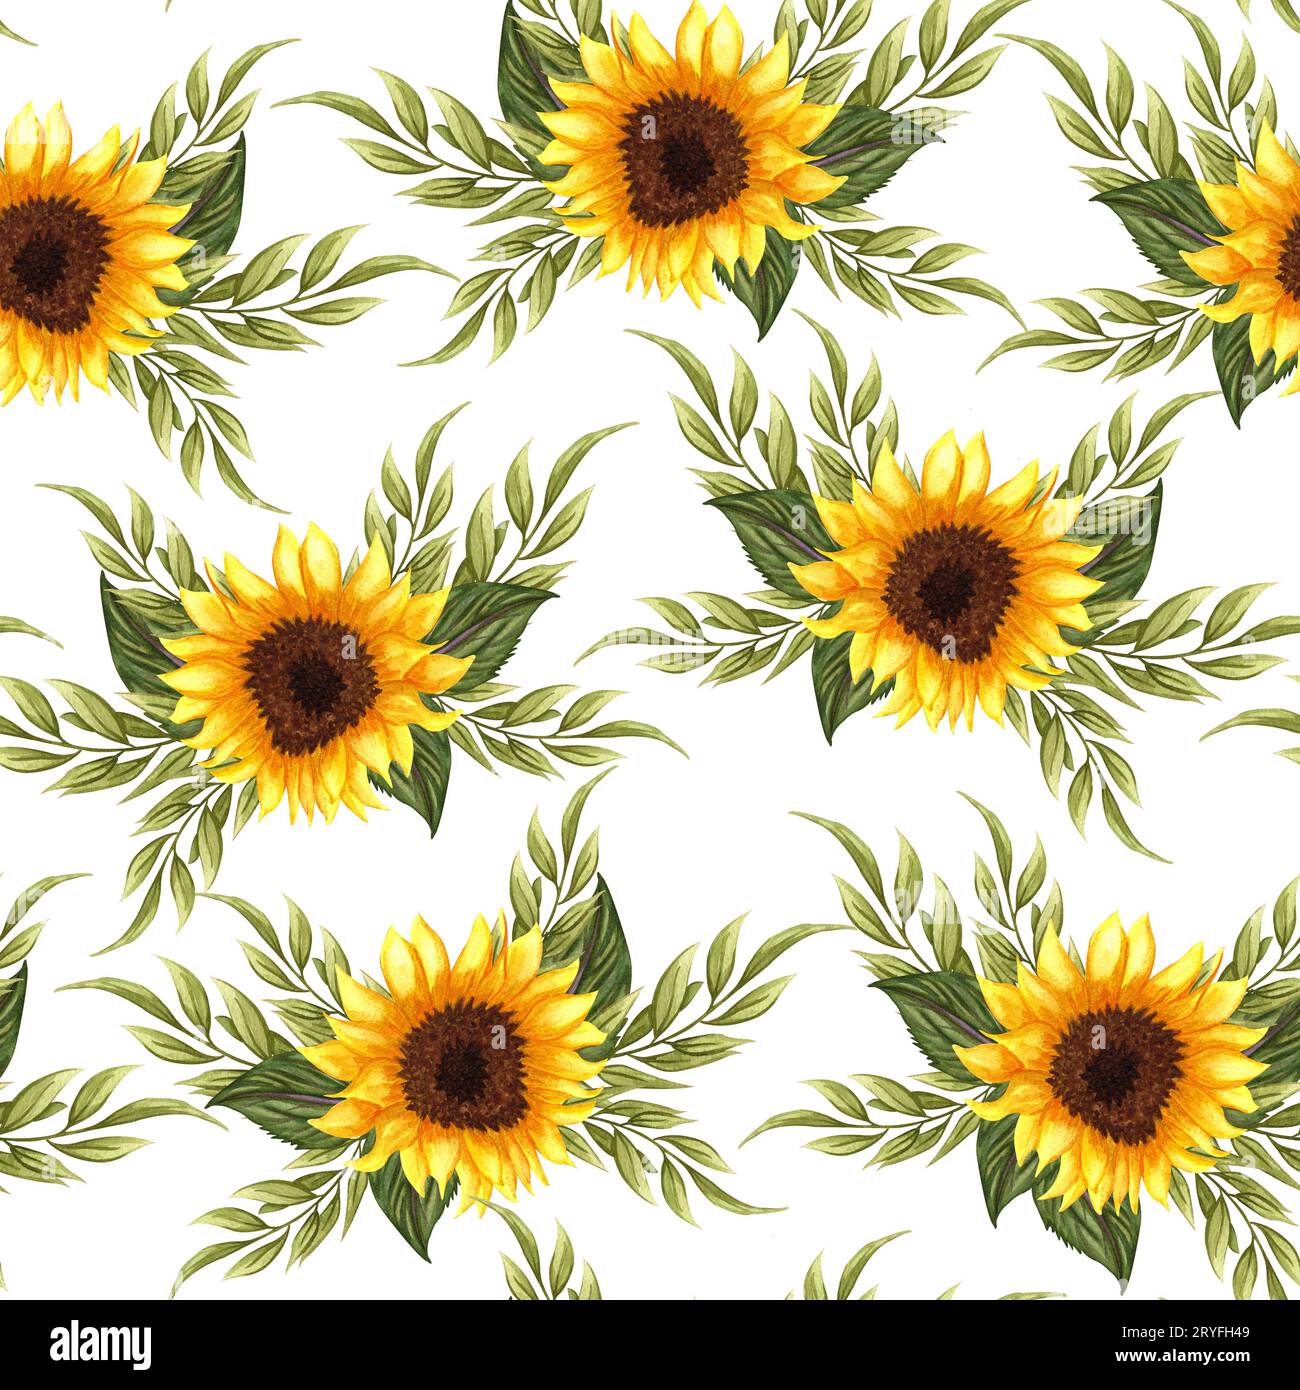 Nahtloses Muster mit Sonnenblumen auf weißem Hintergrund. Kollektion mit dekorativen Blumenmustern. Blumen, Knospen und Blätter ha Stockfoto